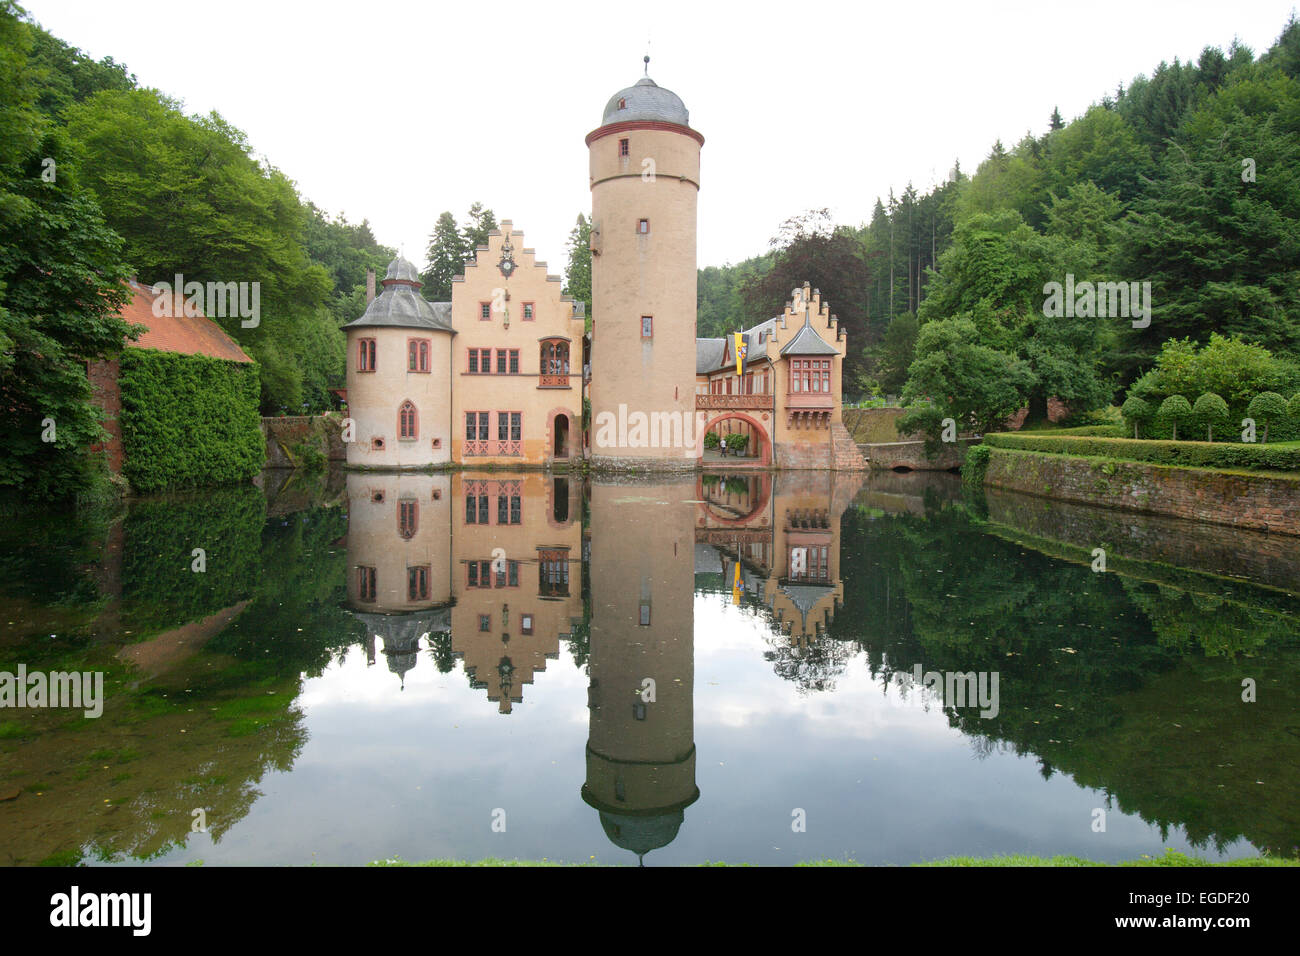 Mespelbrunn castle, Mespelbrunn, Lower Franconia, Bavaria, Germany Stock Photo